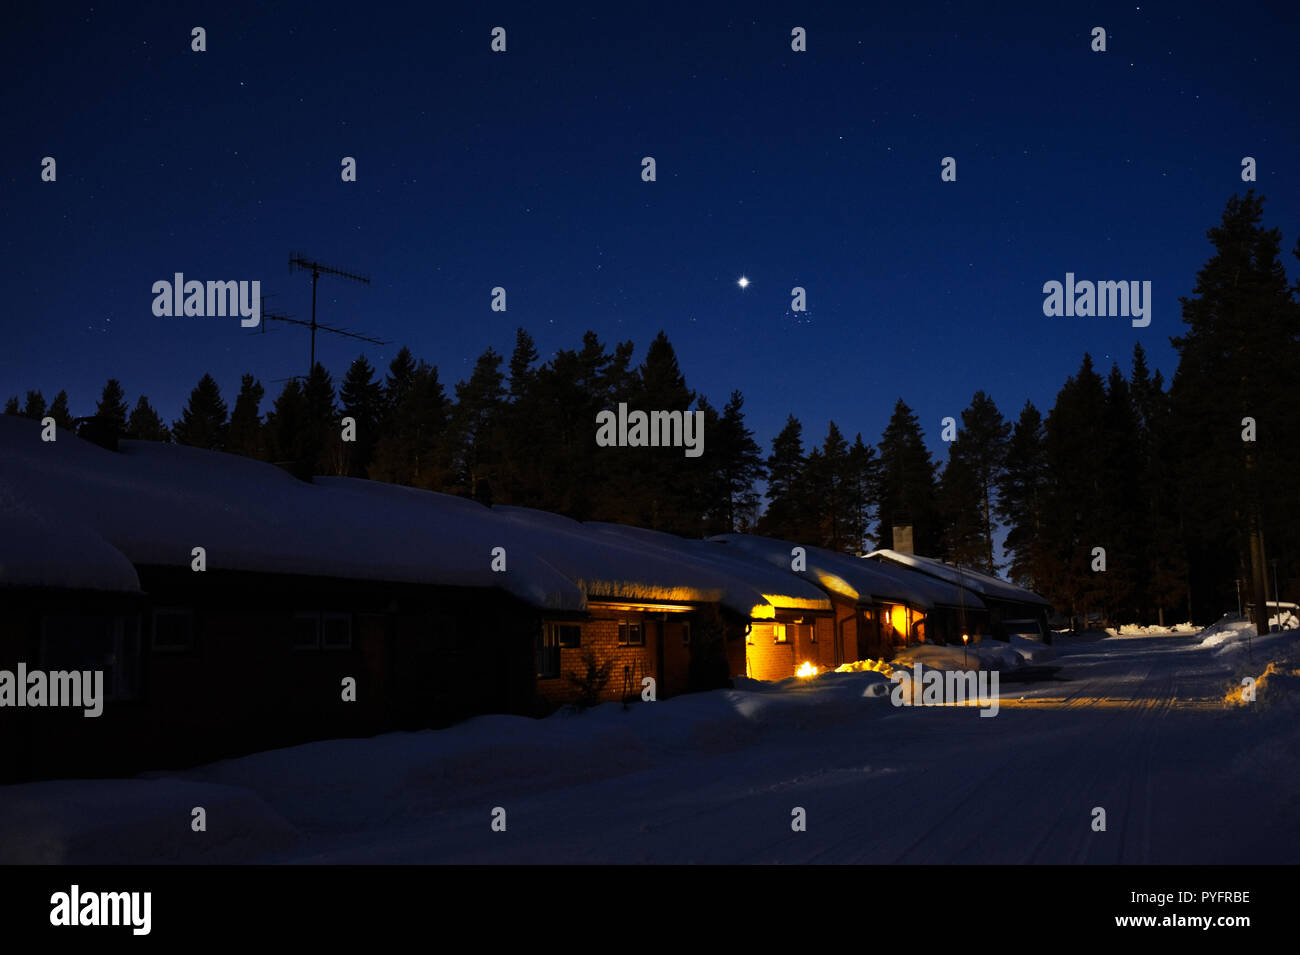 Casa adosada en invierno con nieve de noche. Planeta Venus y las Pléyades en el cielo estrellado. Foto de stock